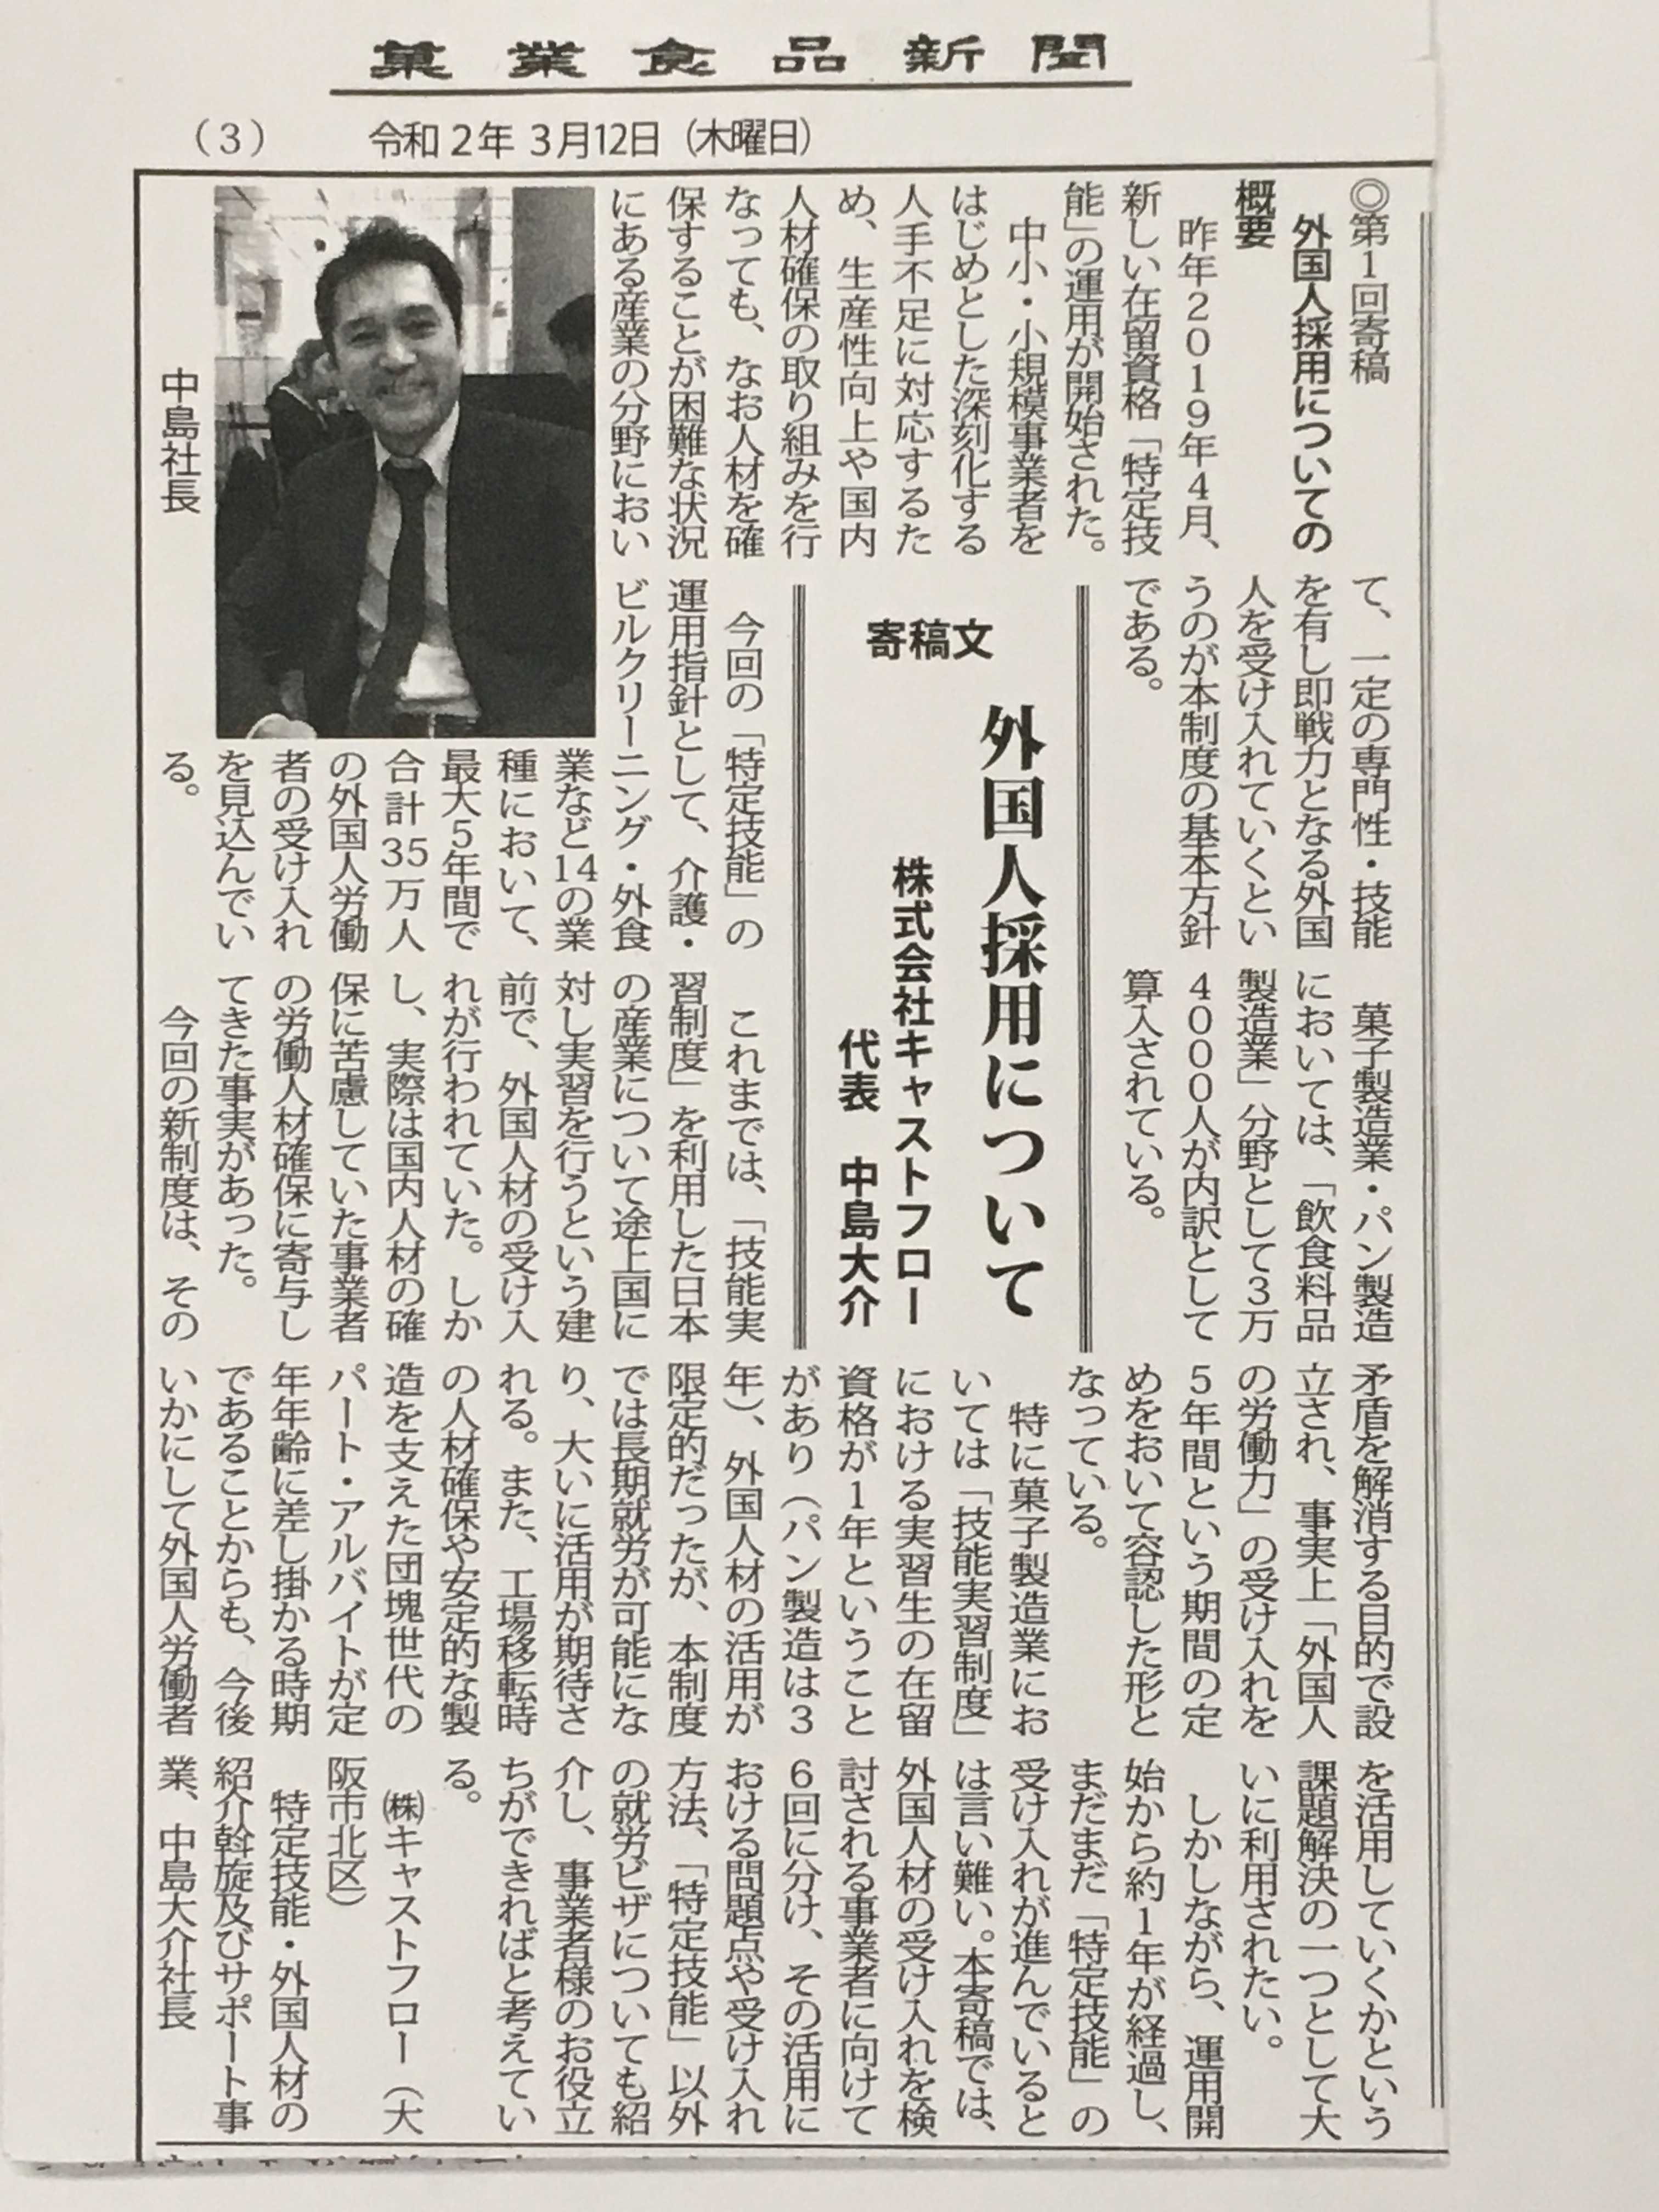 記事 株式会社キャストフロー 代表取締役 中島 の、　　　　　新連載『外国人採用について』のアイキャッチ画像